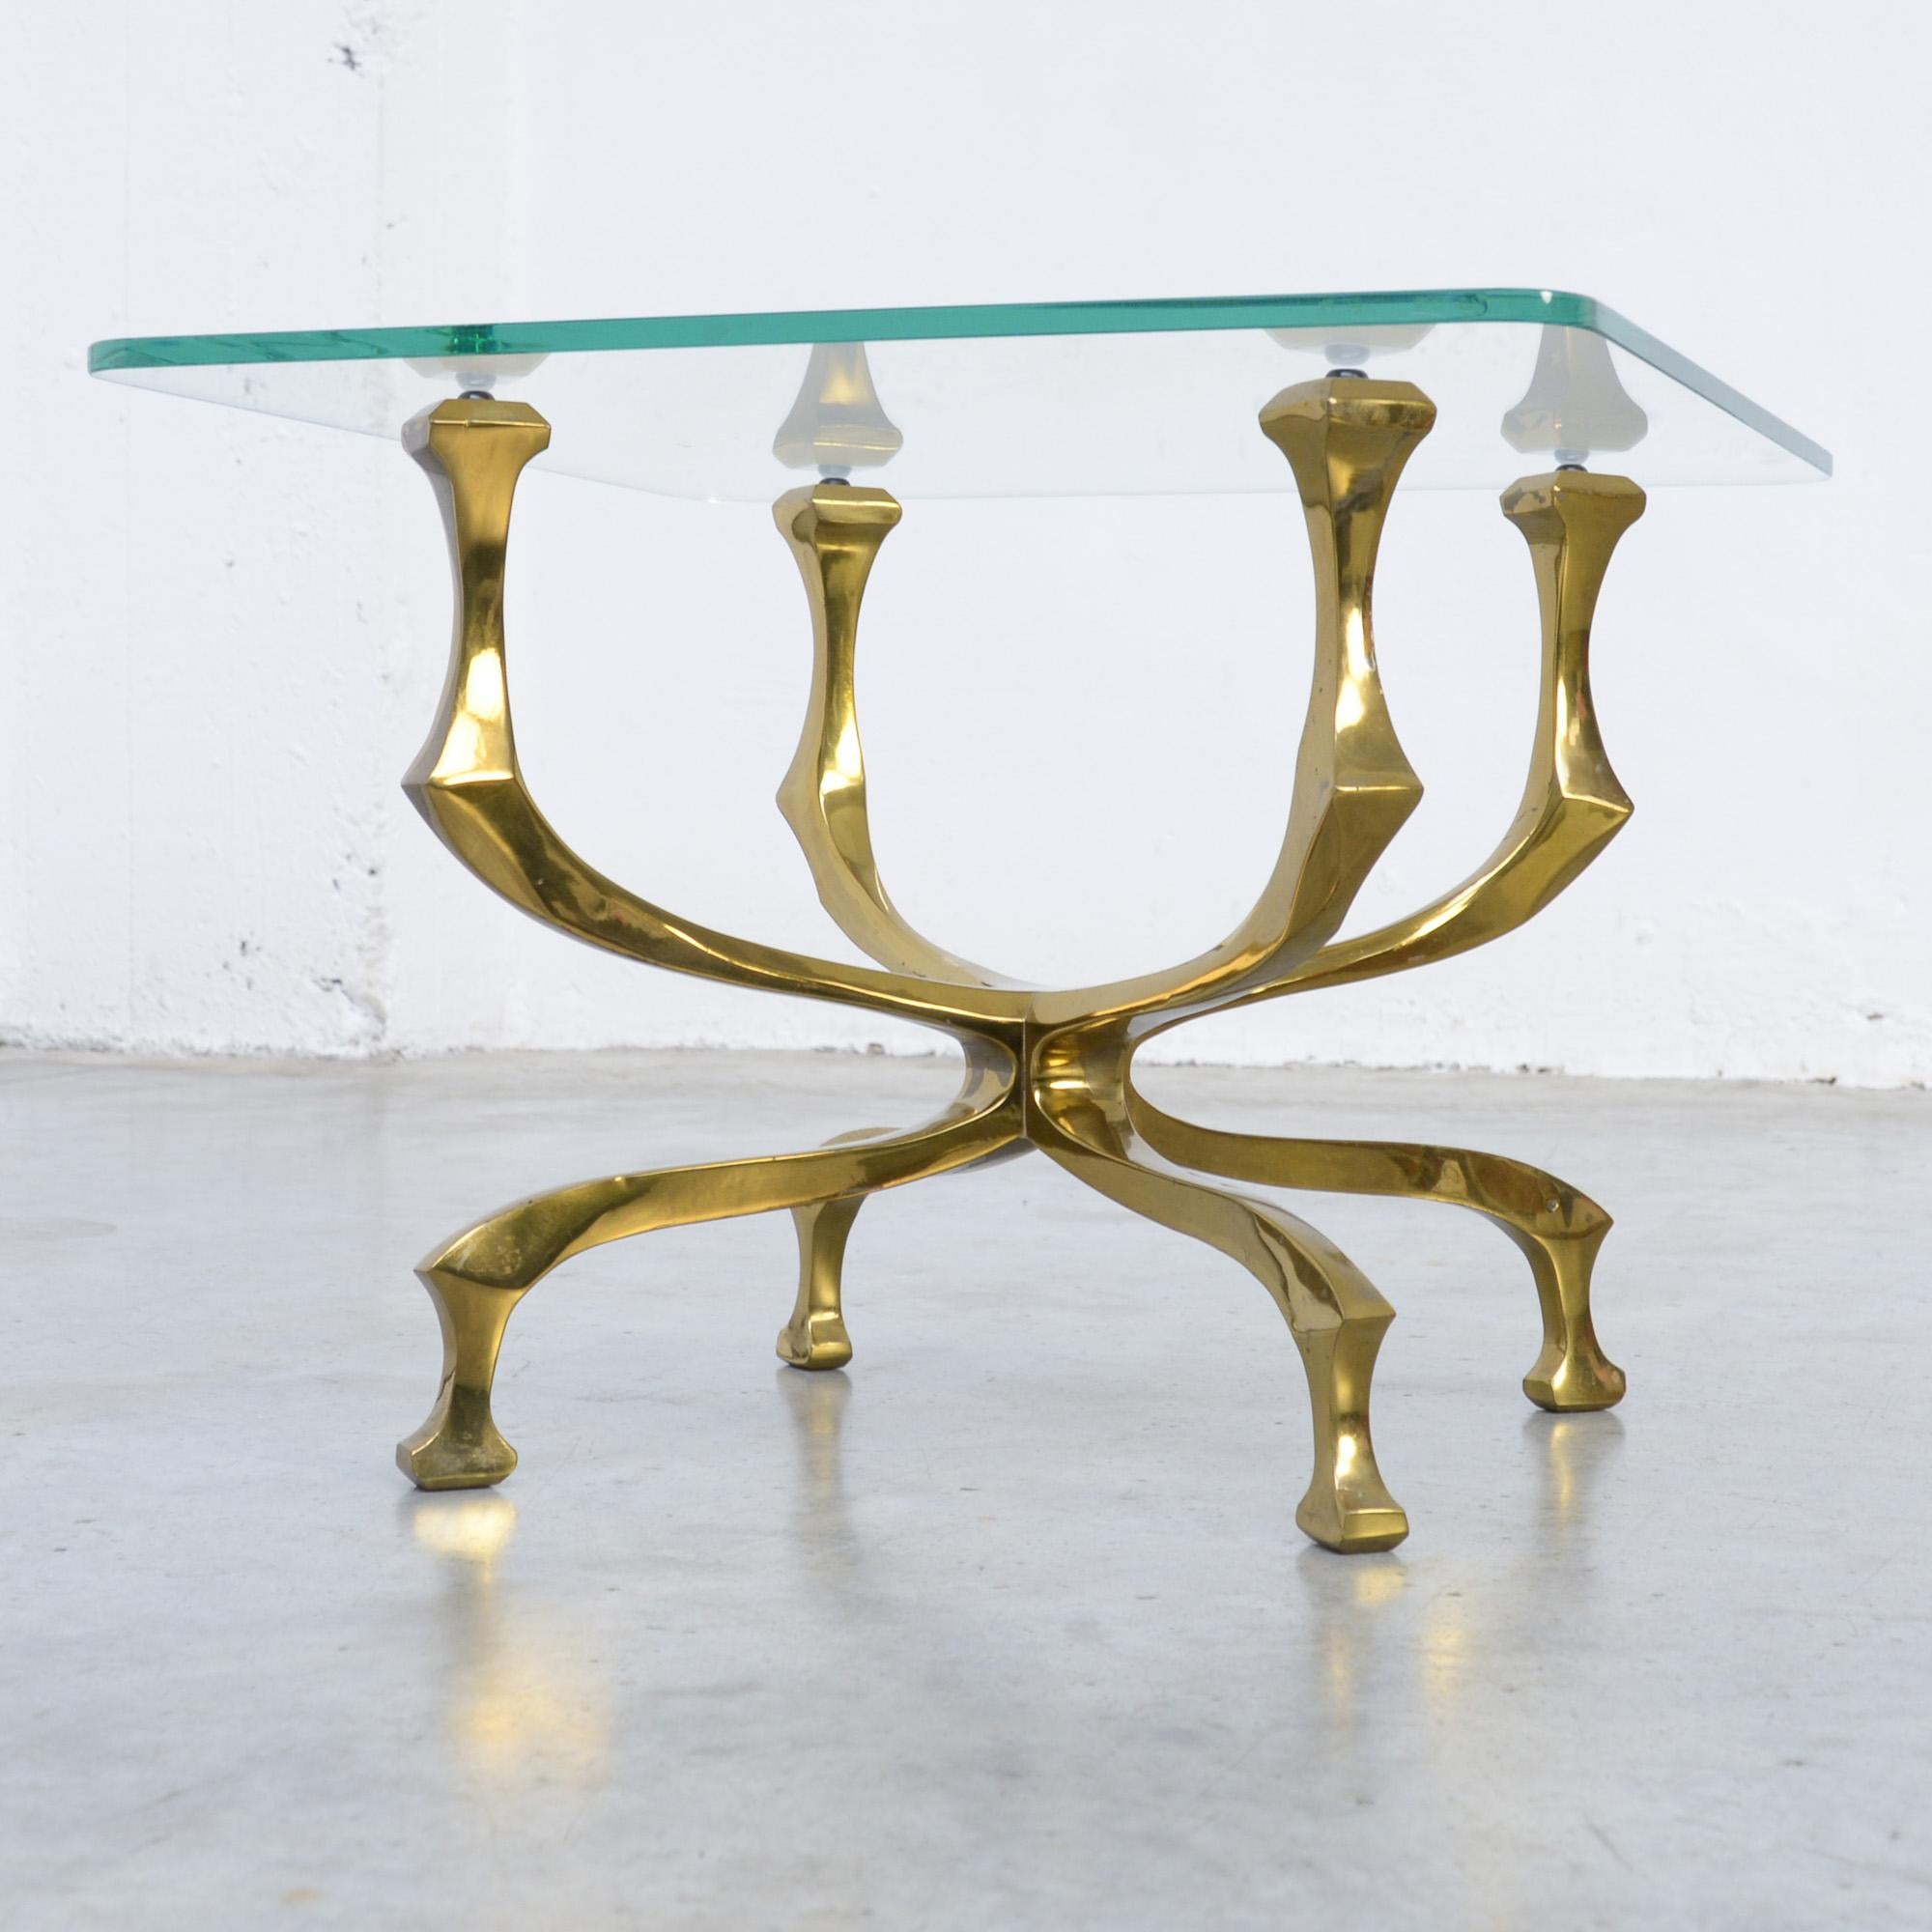 Cette élégante table d'appoint ou table basse a été créée par Willy Daro dans les années 1970.
Le plateau en verre de cristal repose sur une base en bronze de fabrication artistique. Le tableau est signé par l'artiste et en très bon état. Le